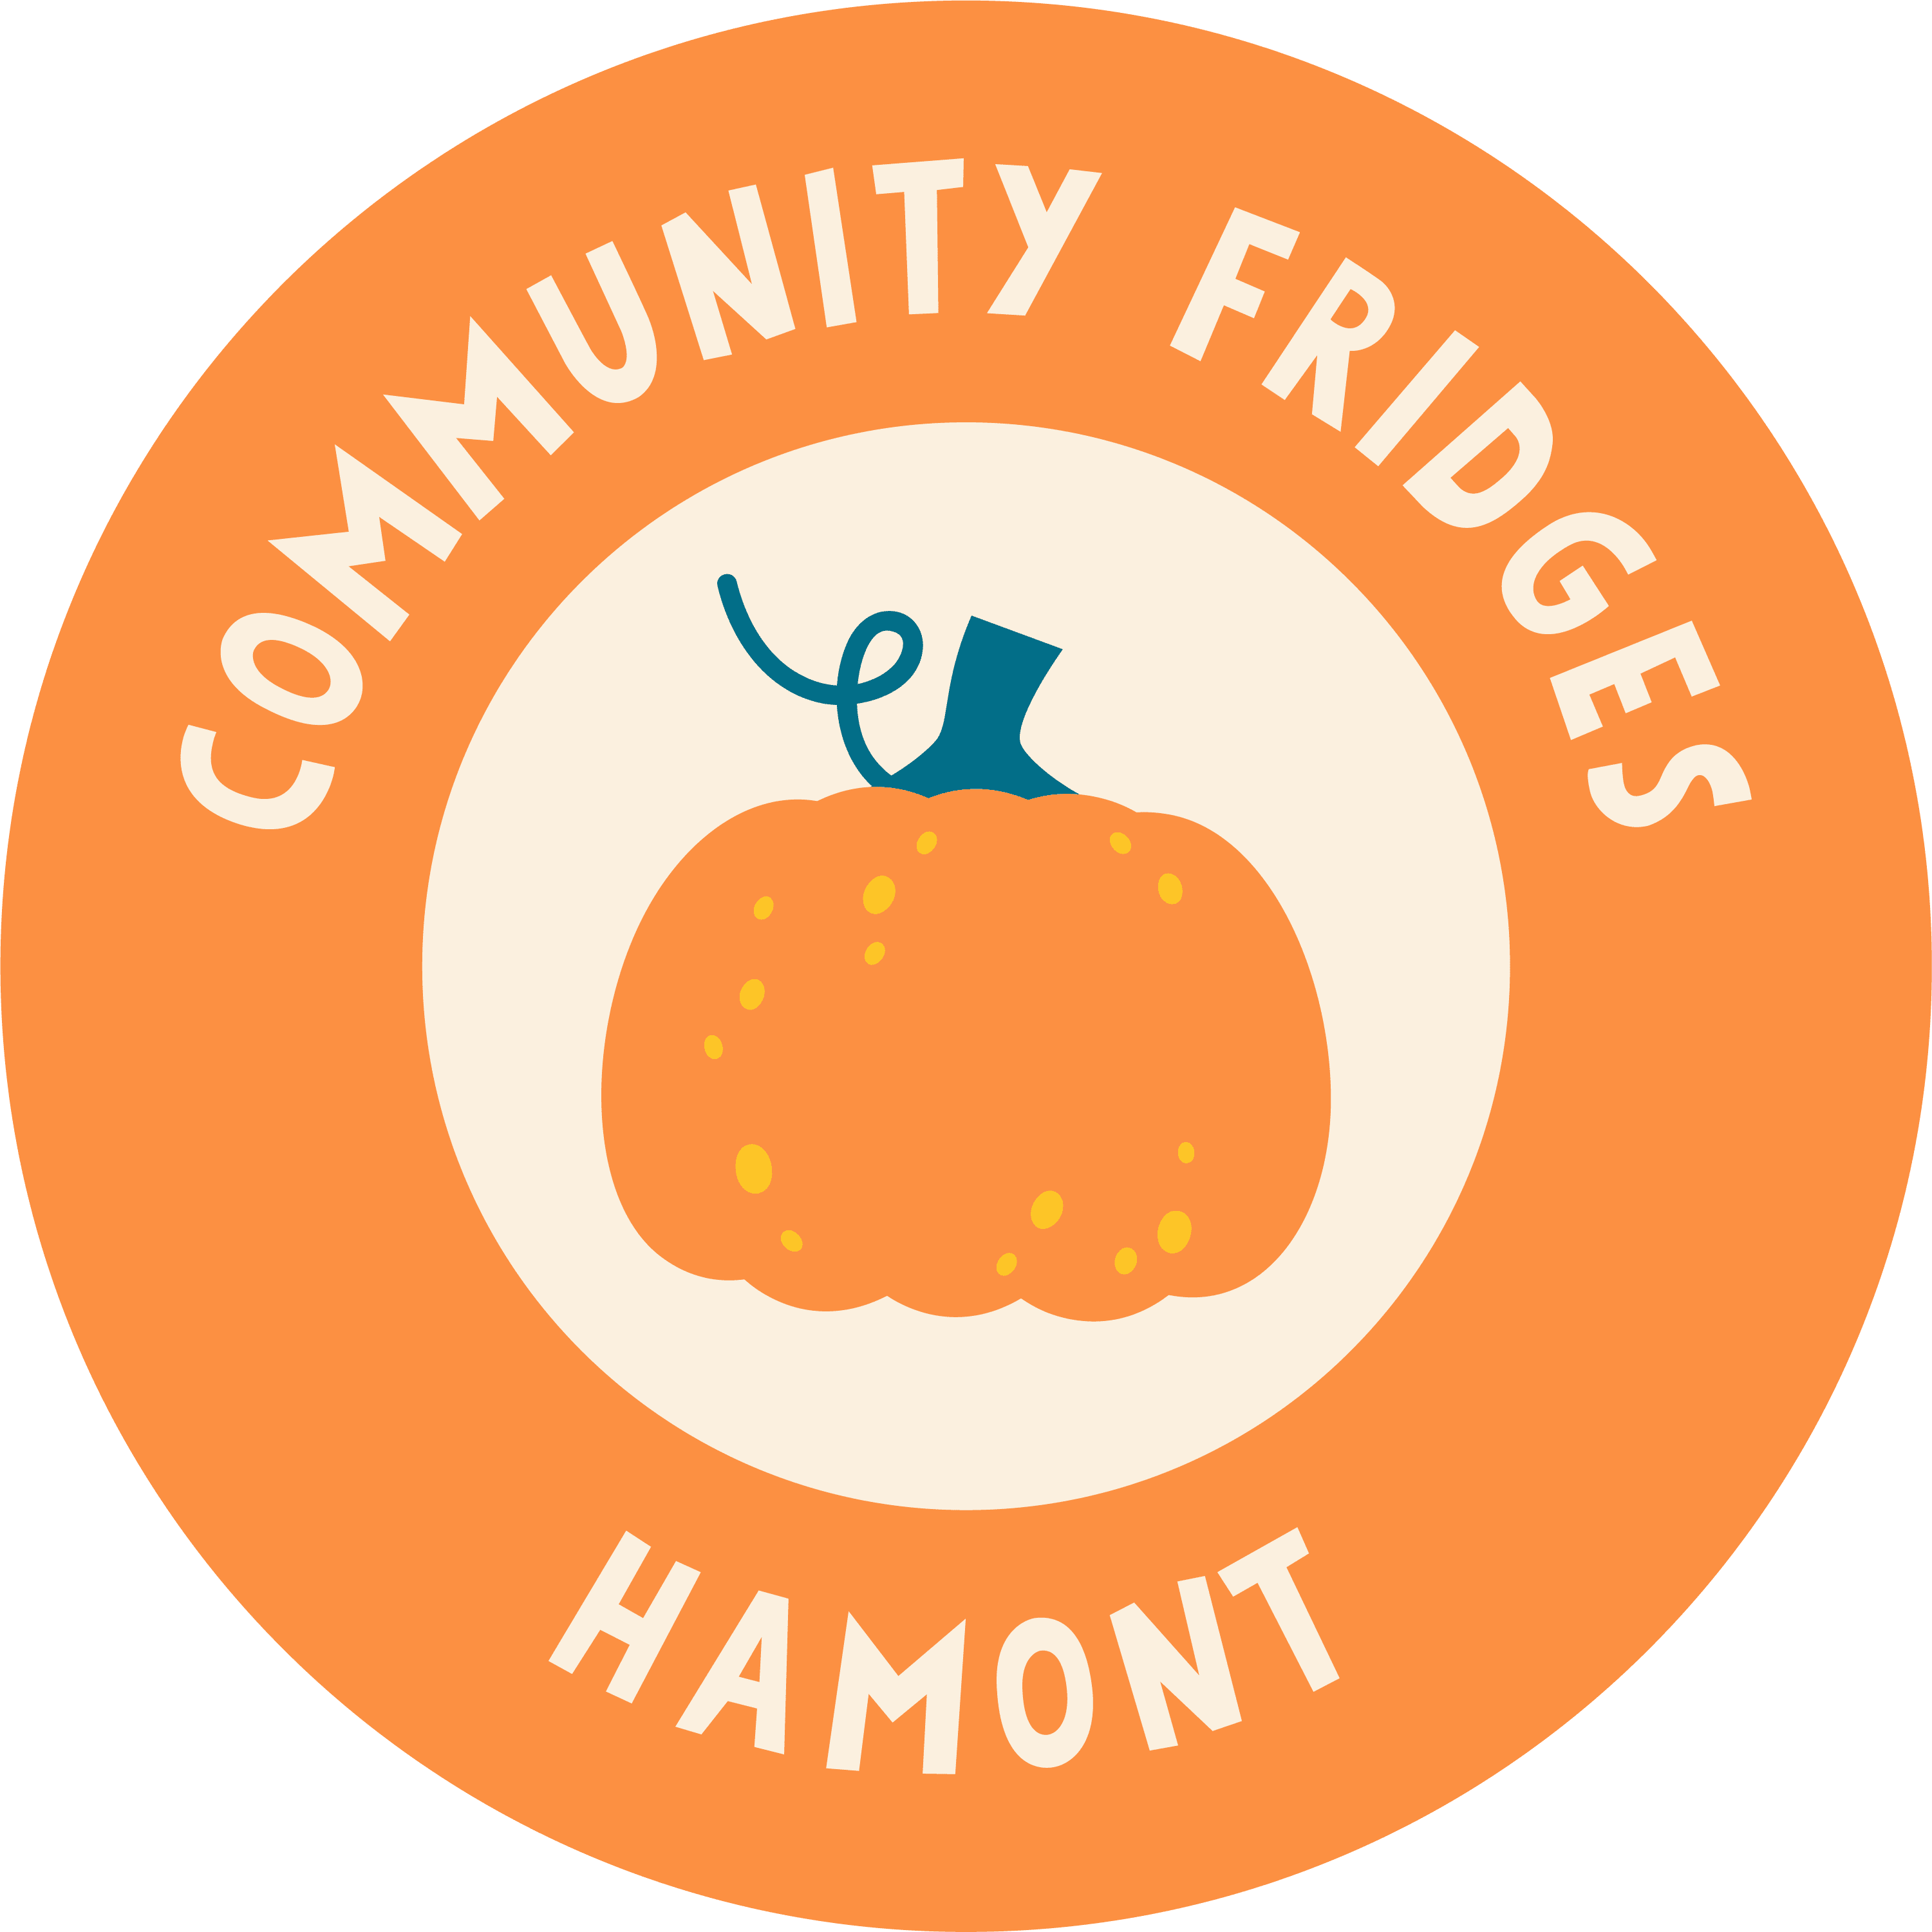 alternative logo for community fridges hamont